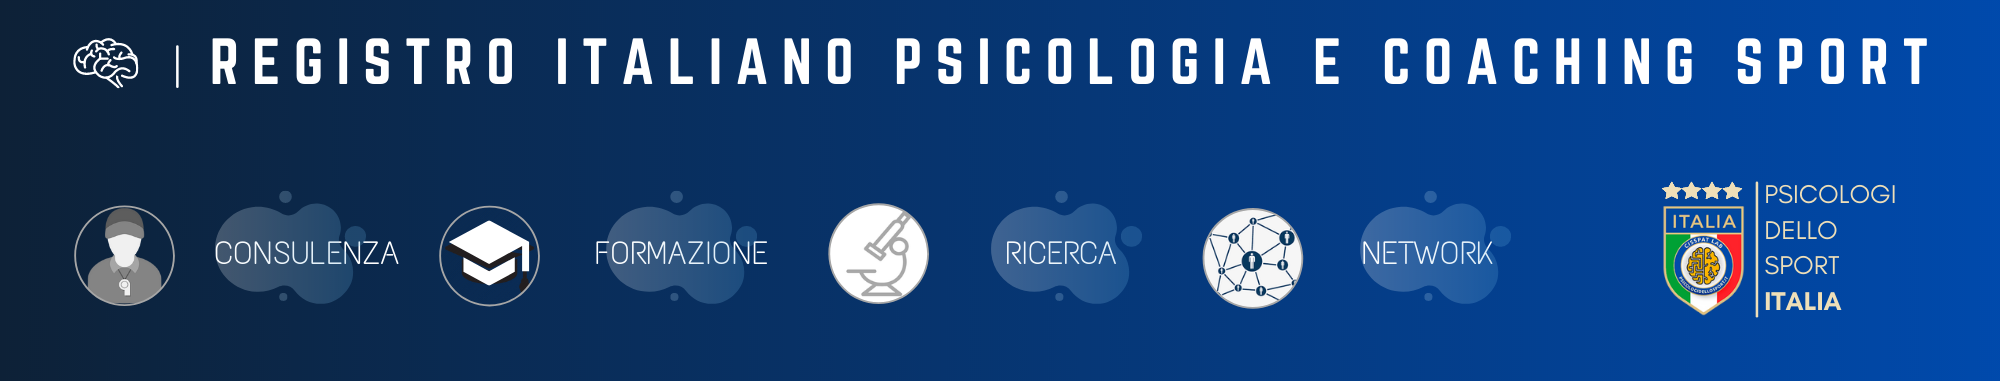 health human performance institute  registro italianao psicologi dello sport preparatore mentale mental coach